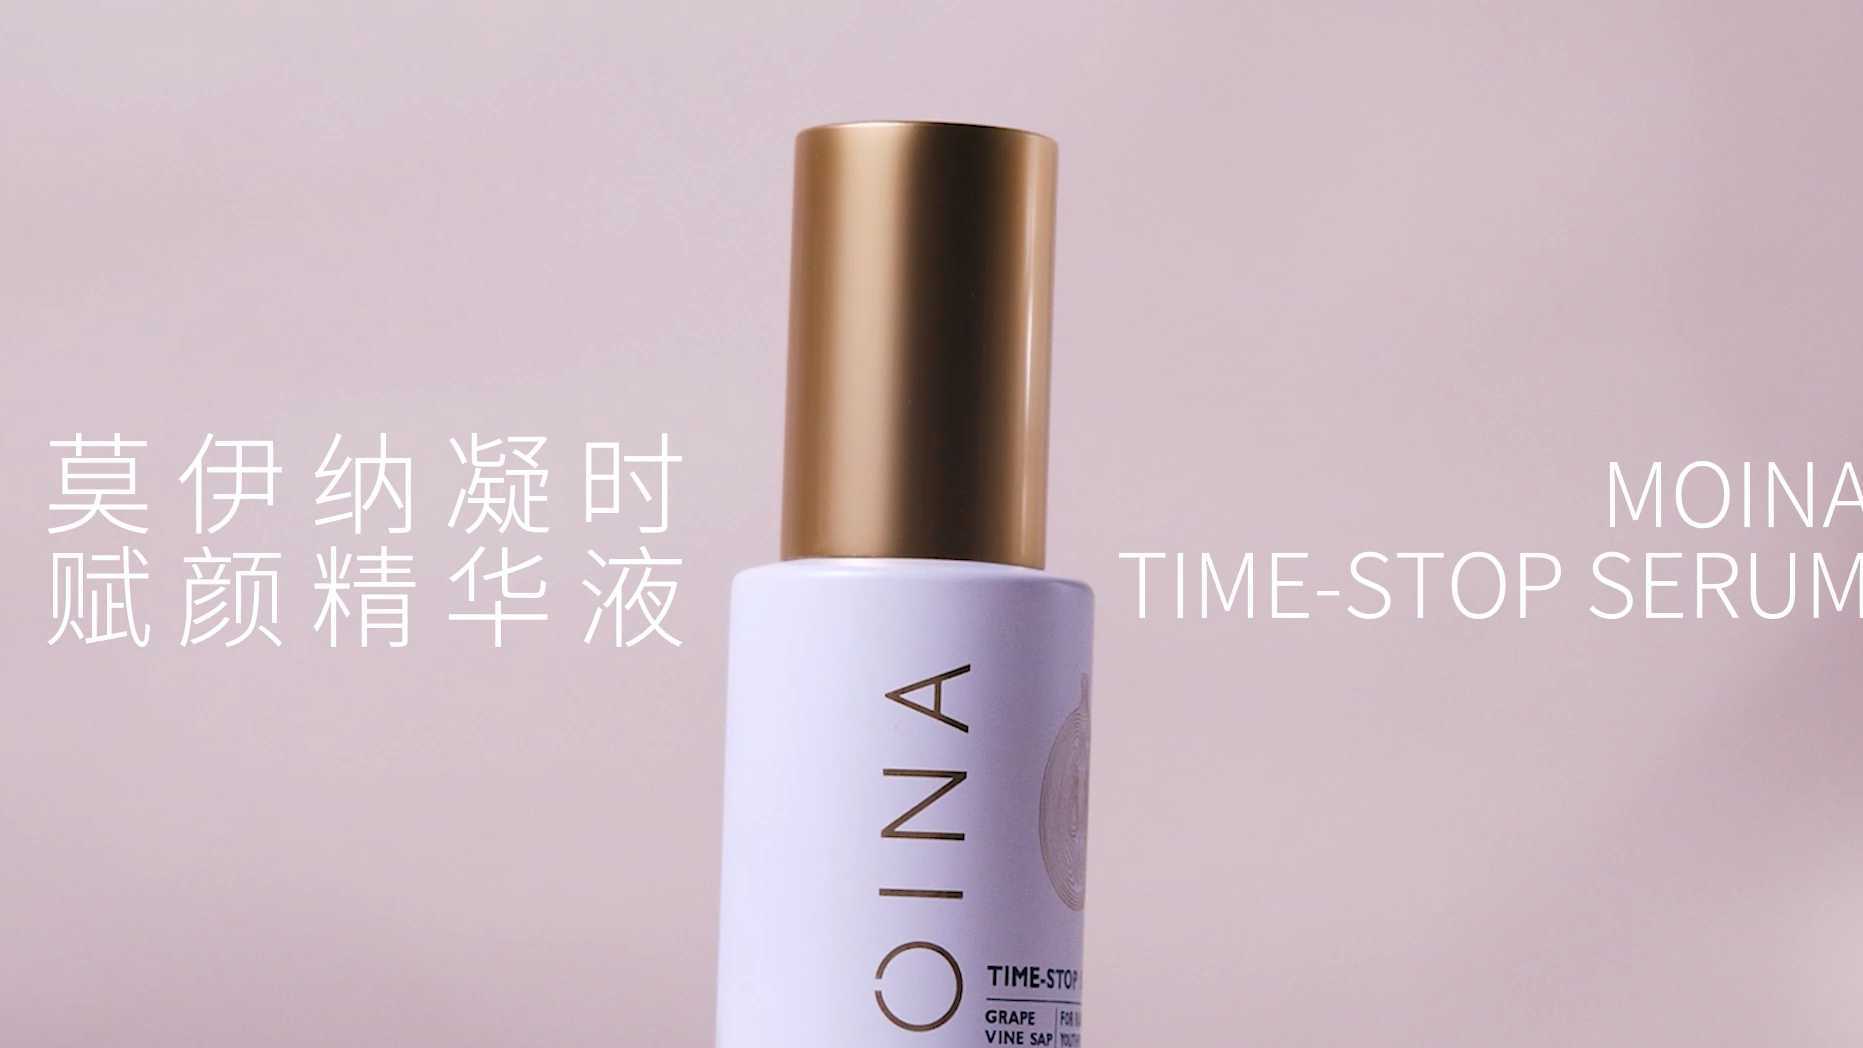 澳洲护肤品牌MOINA新品凝时赋颜精华液广告